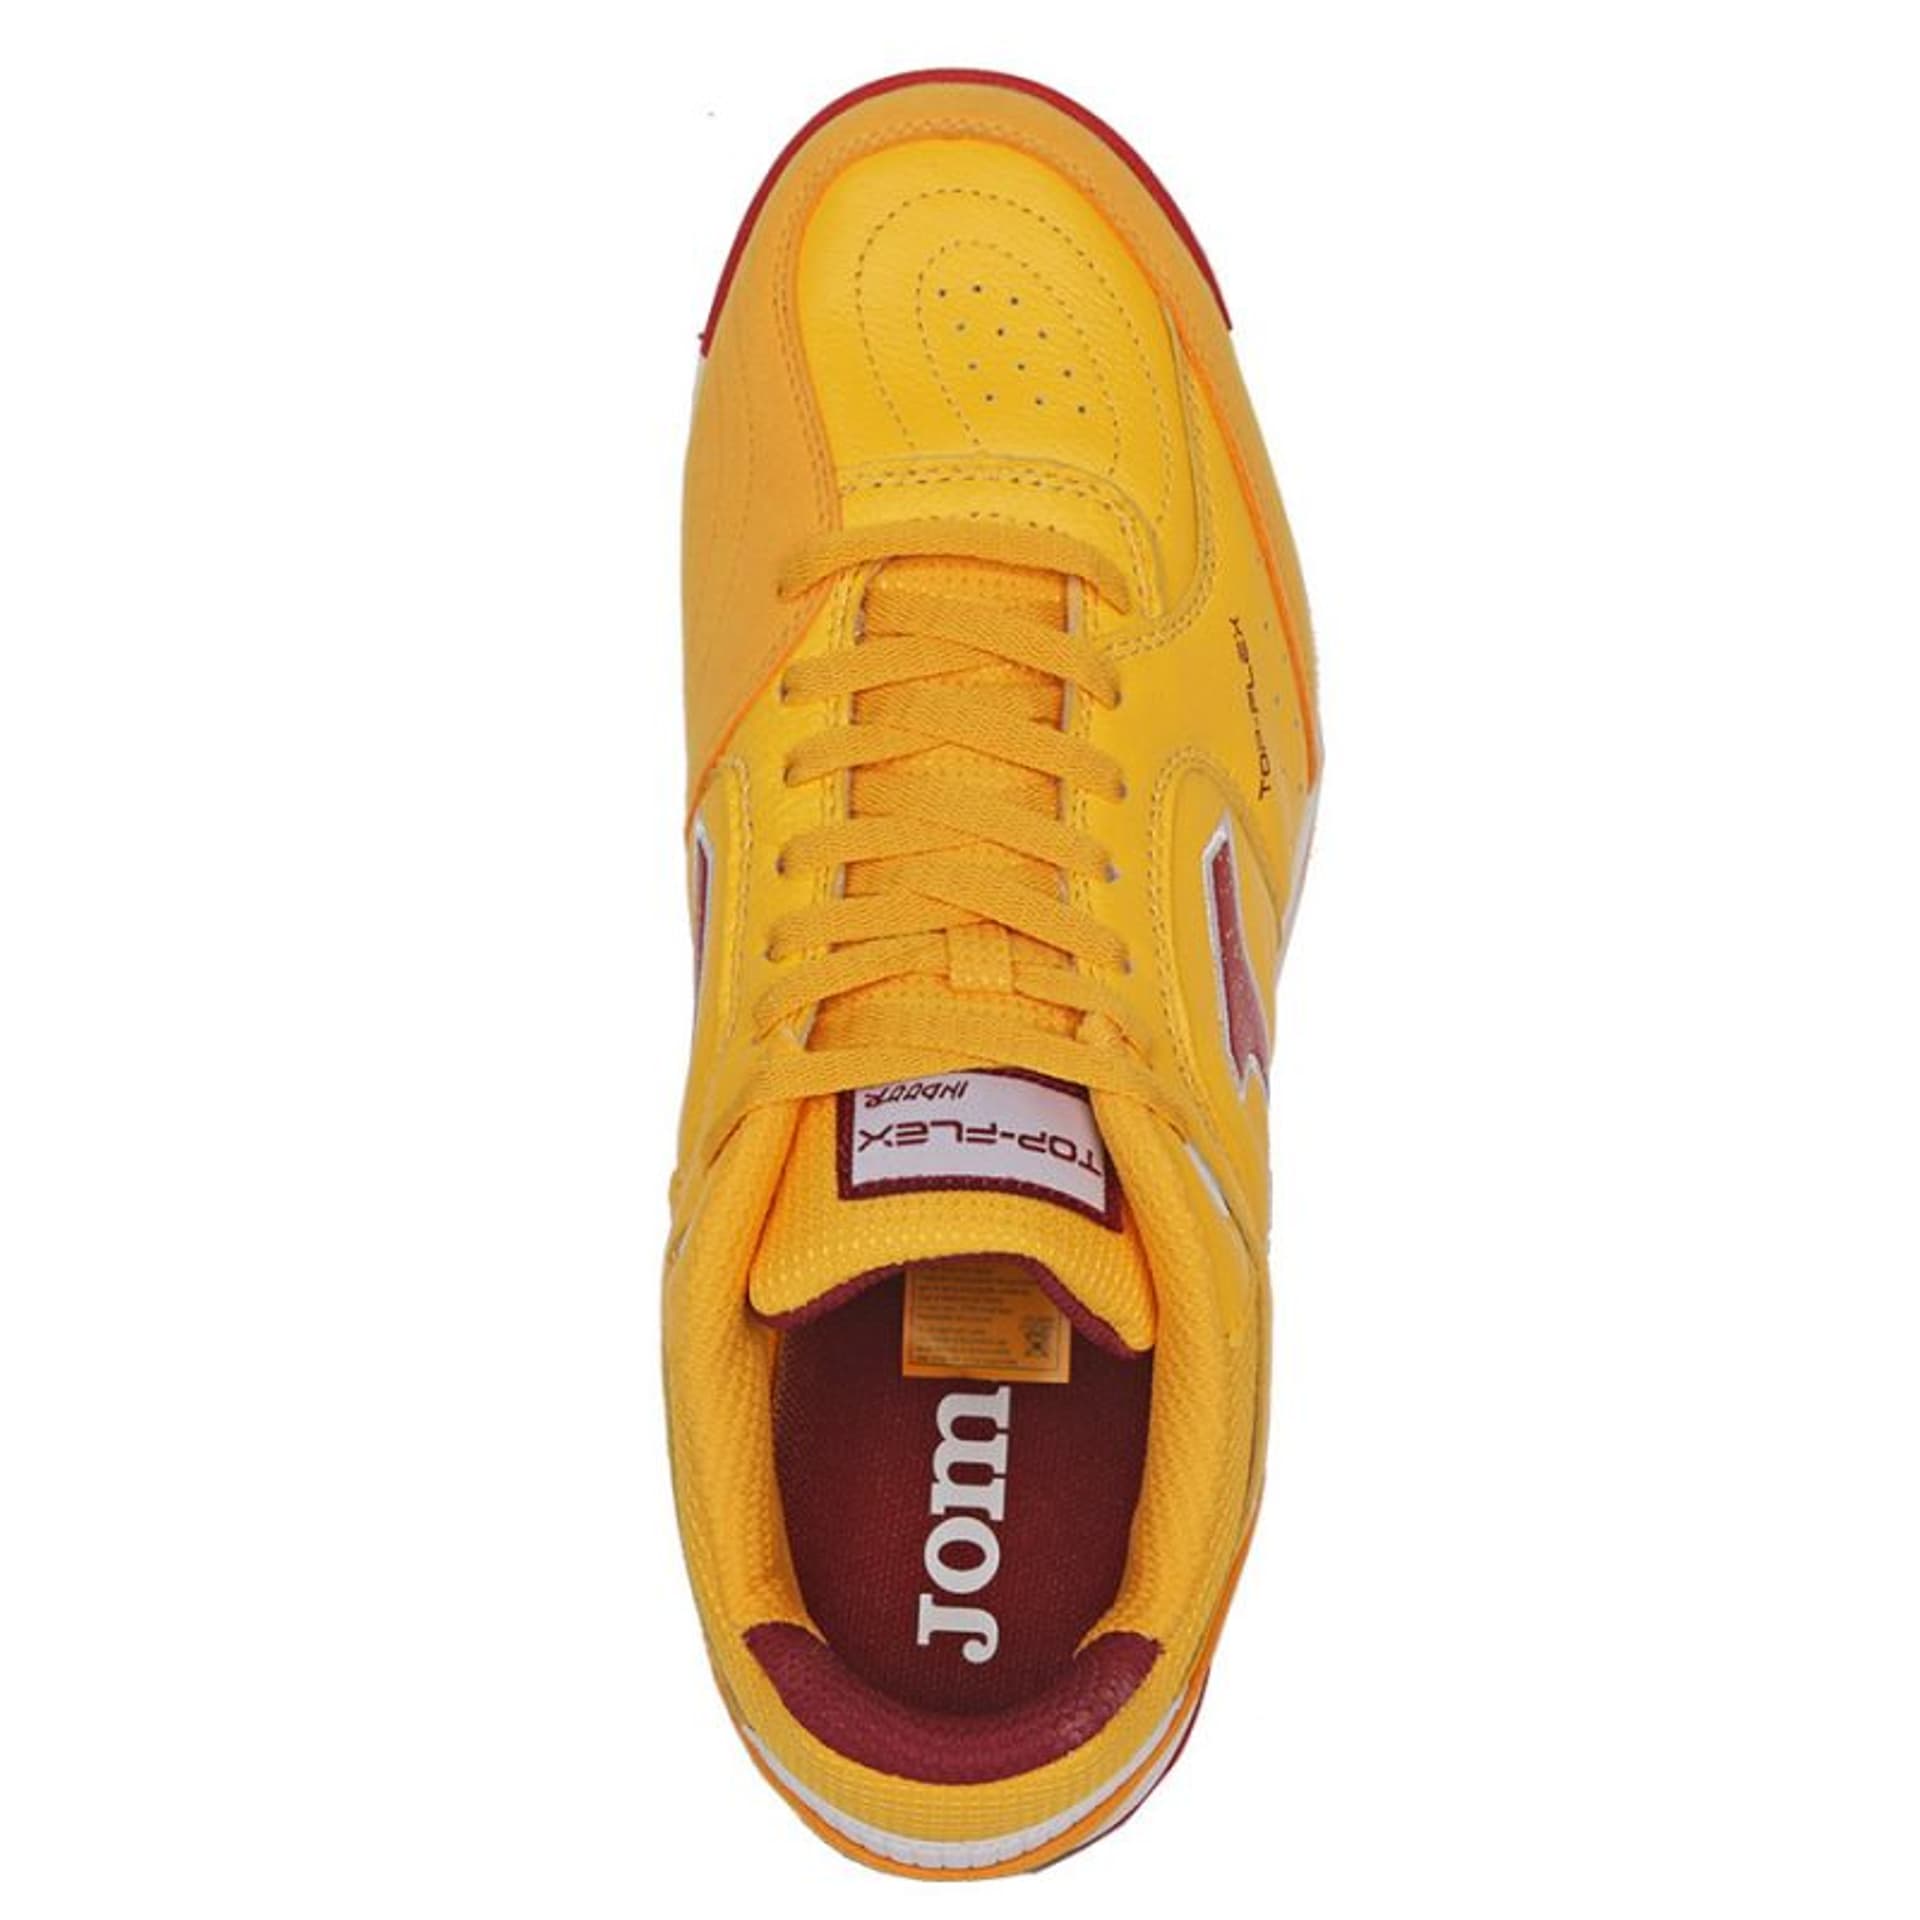 Buty piłkarskie Joma Top Flex 2328 TF M (kolor Żółty, rozmiar 41)